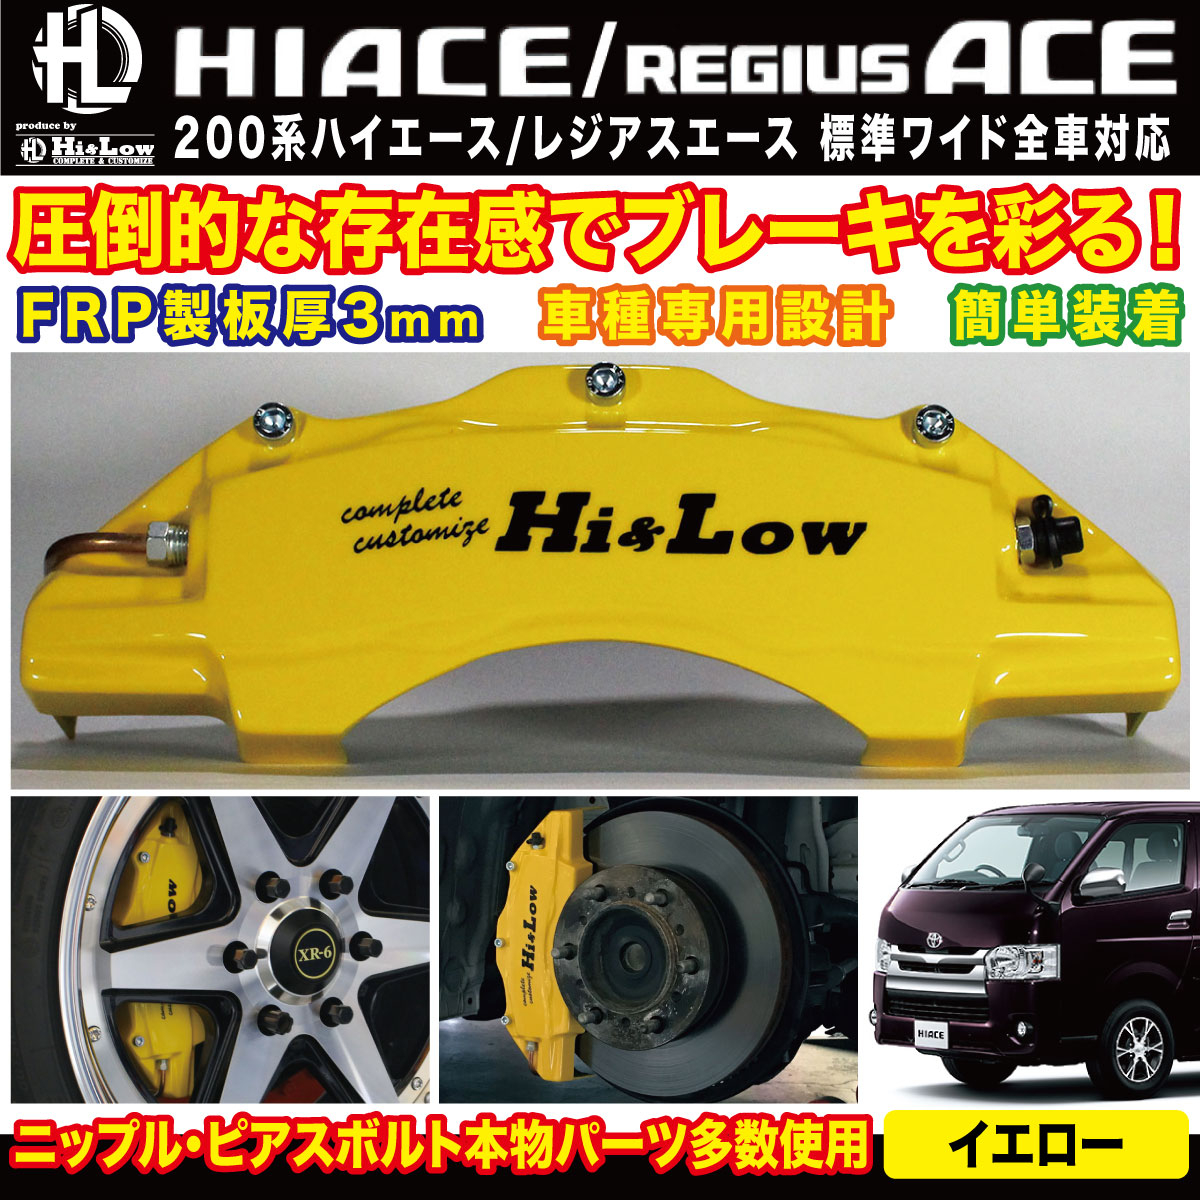 Hi&Low H&L 200系ハイエース/レジアスエース用ブレーキキャリパーカバーフロントBゴールド (ロゴカラーオレンジ)